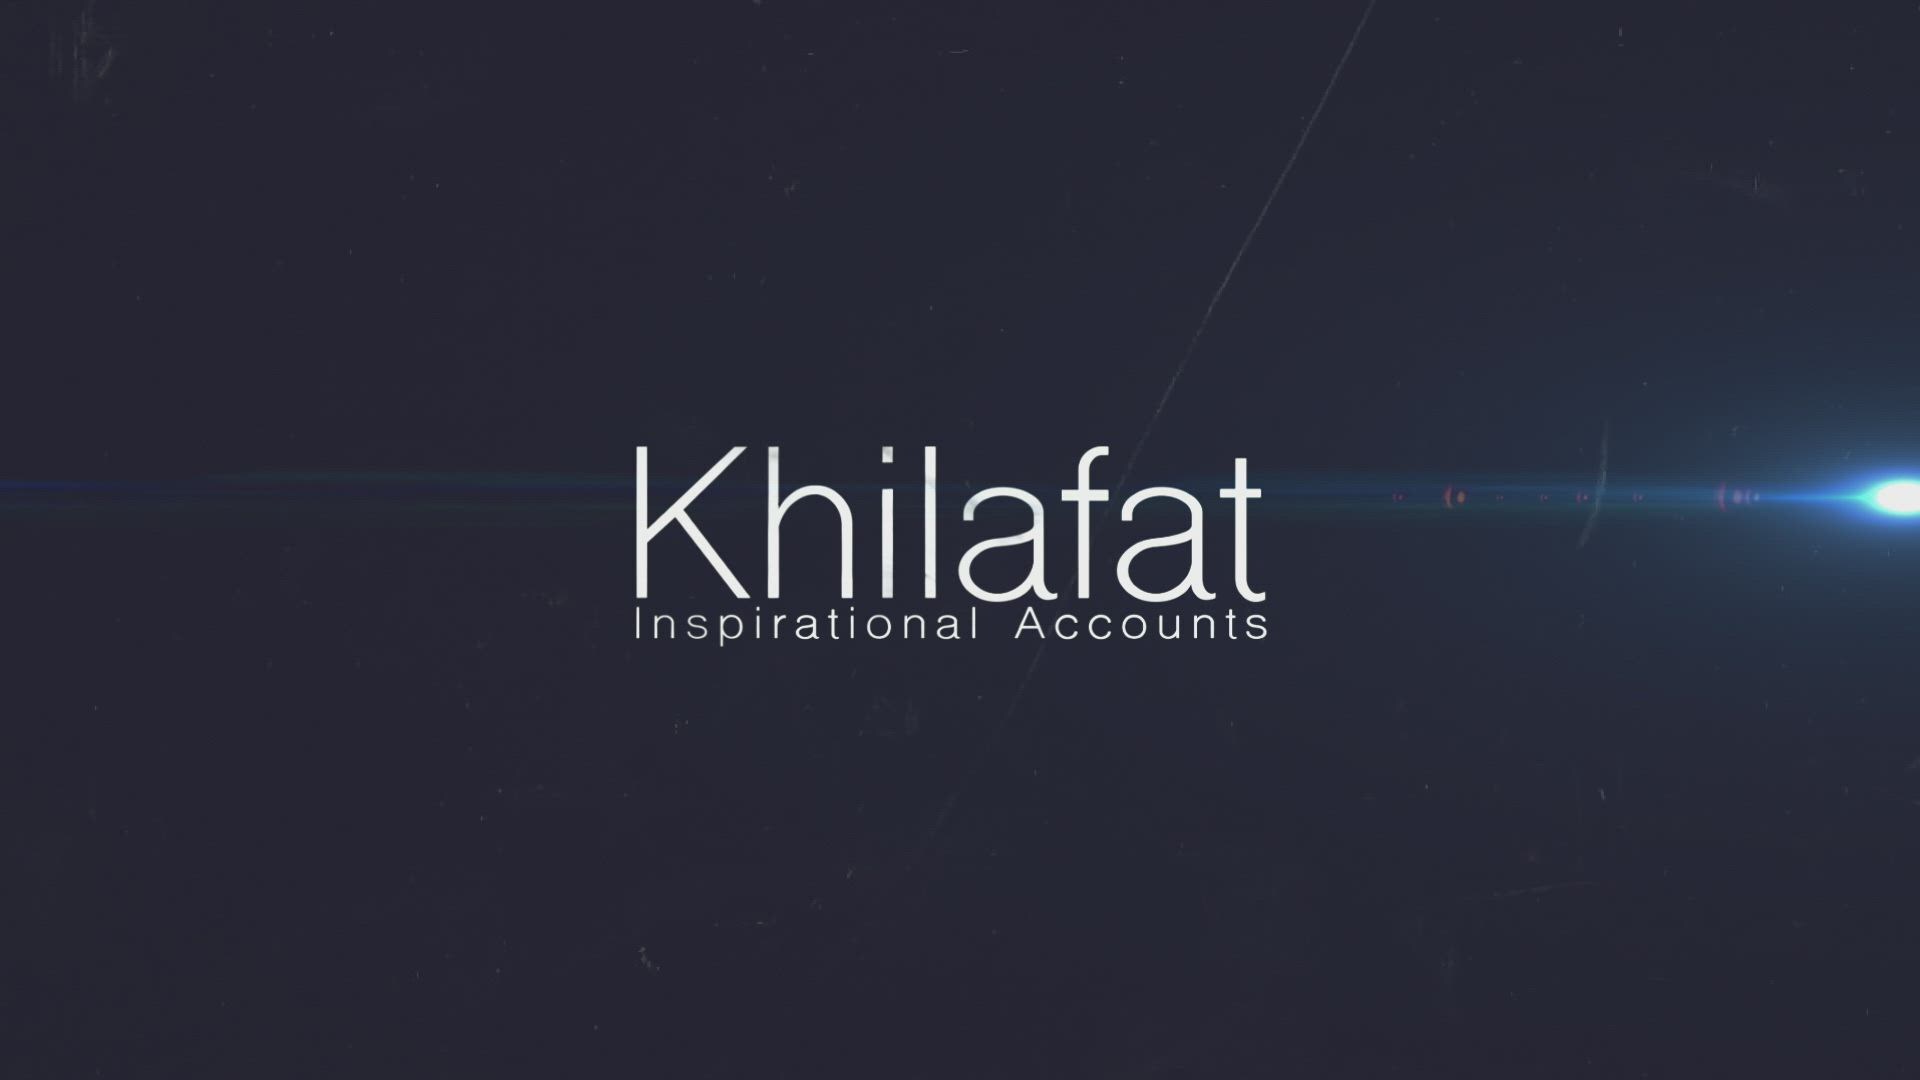 Khilafat - Inspirational Accounts